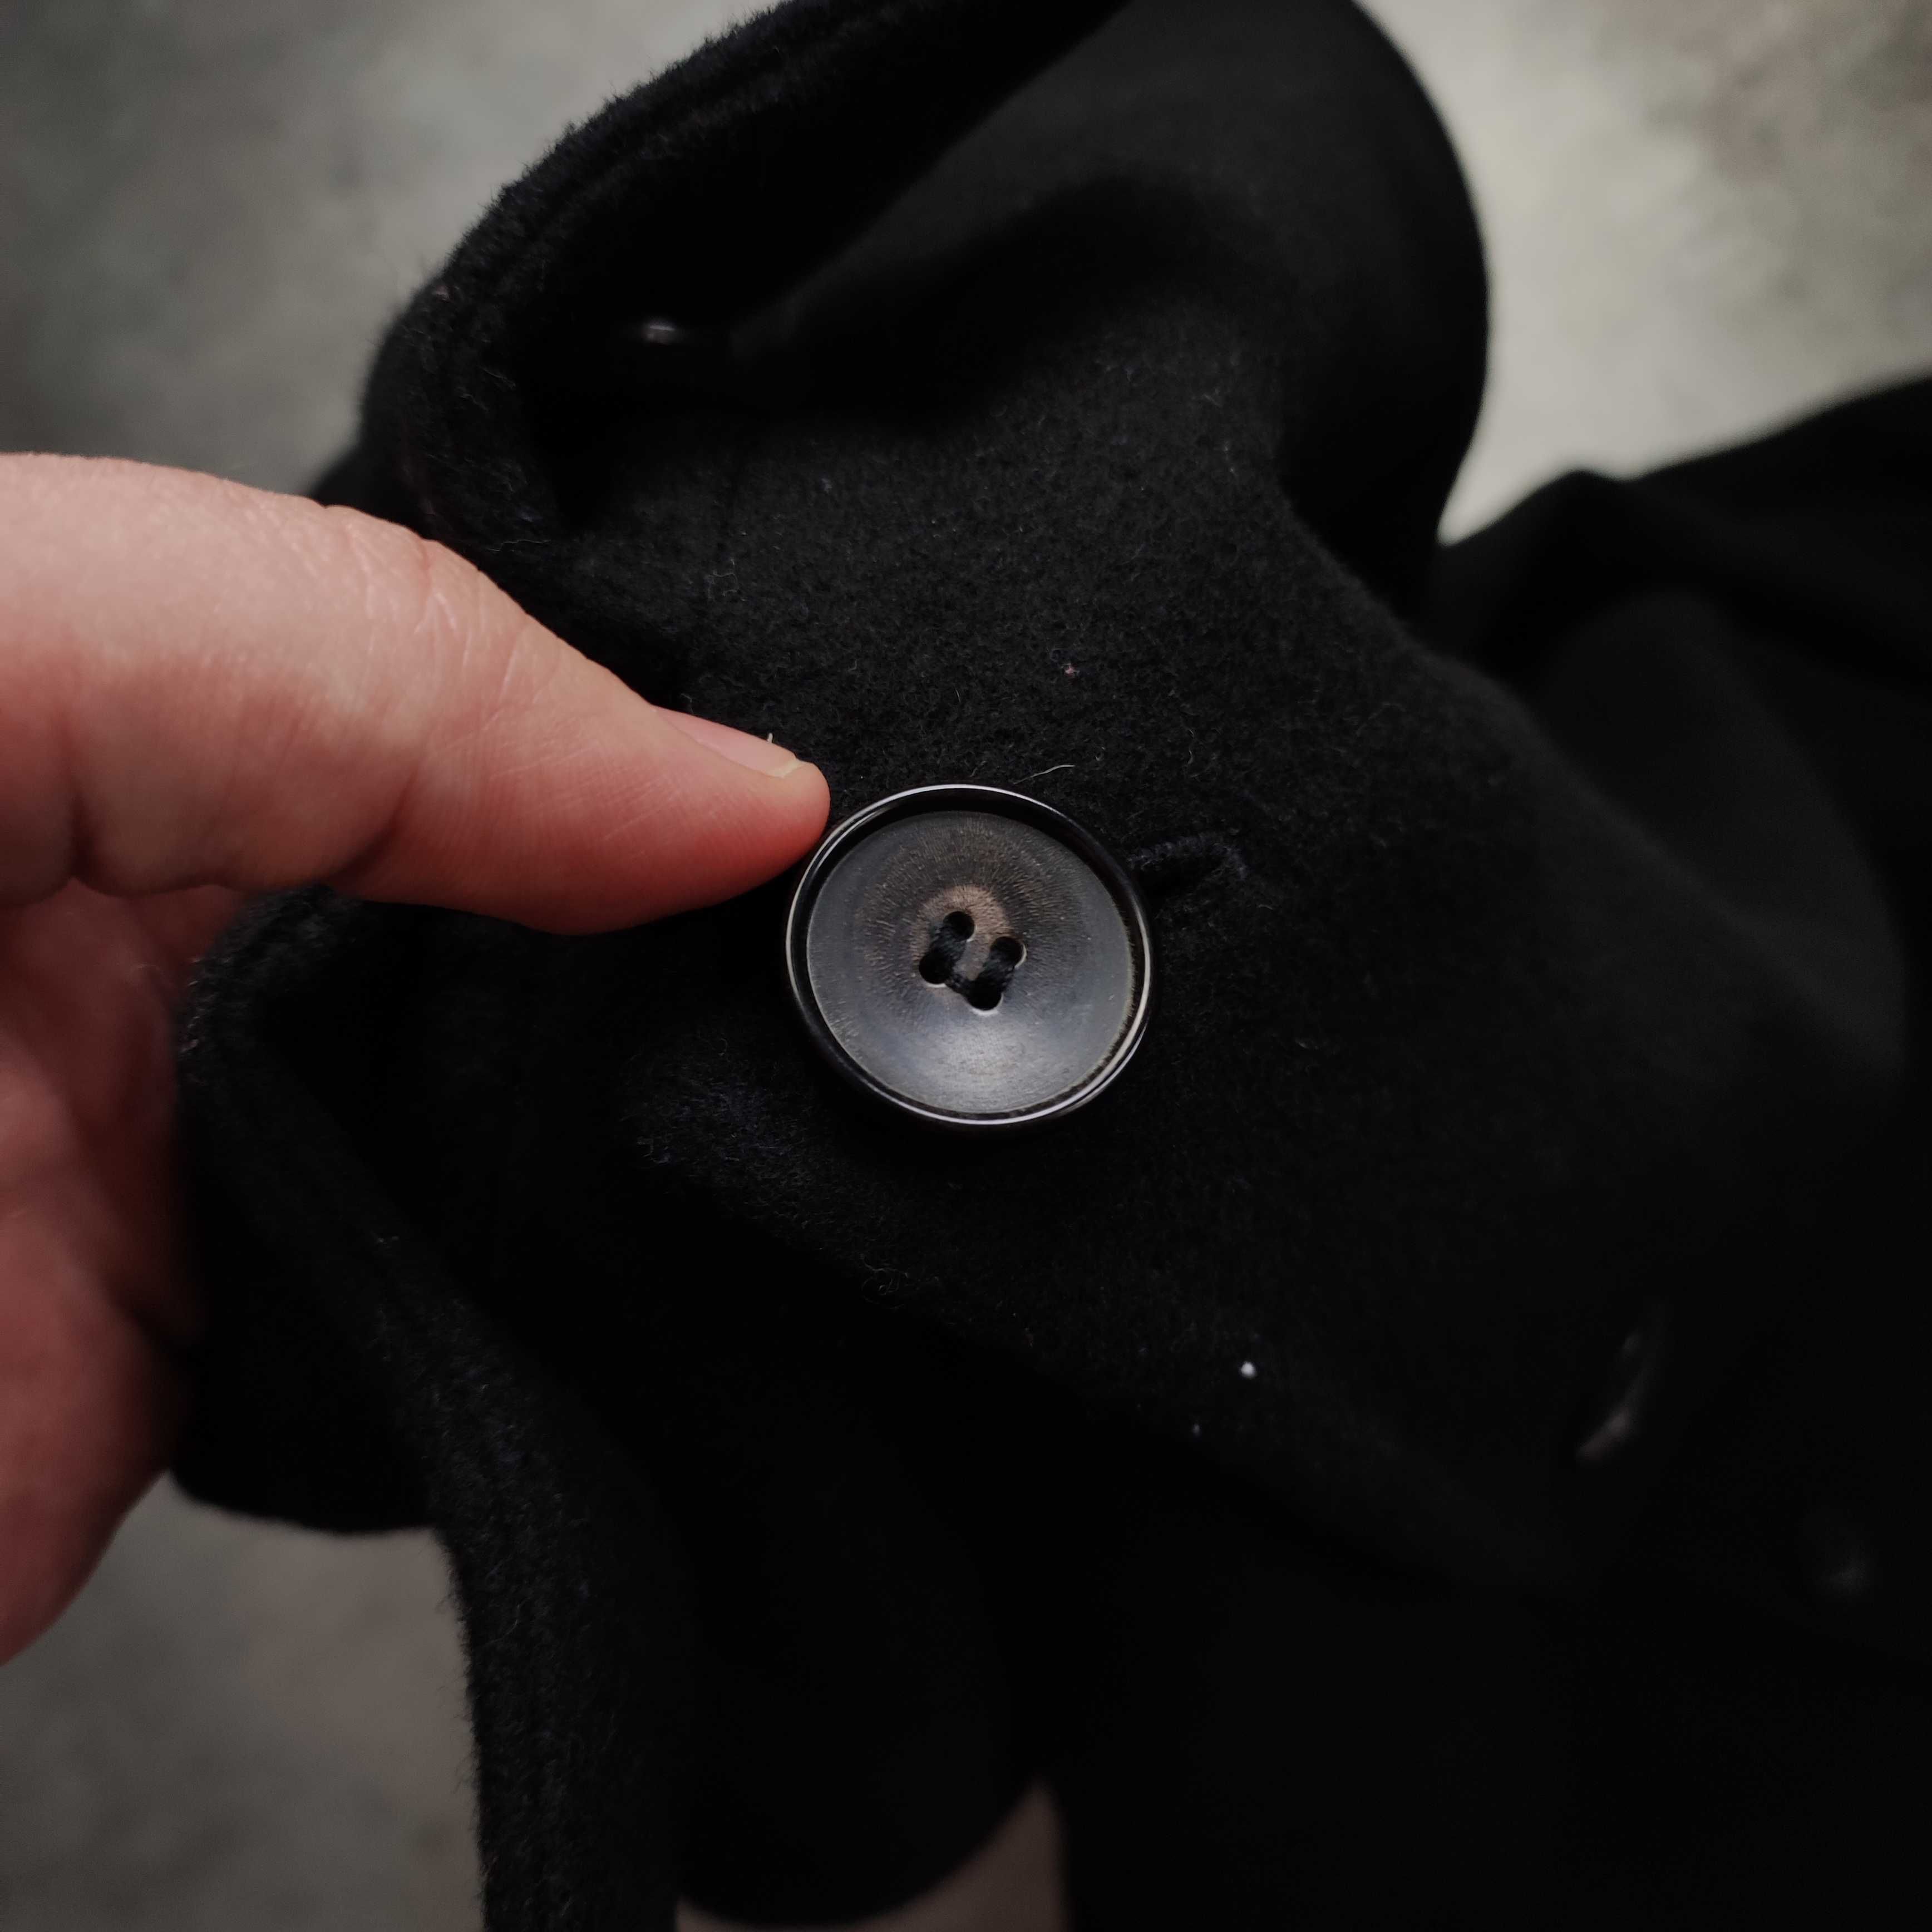 MĘSKI Premium Długi Czarny Płaszcz Wełniany Hugo Boss na Guziki